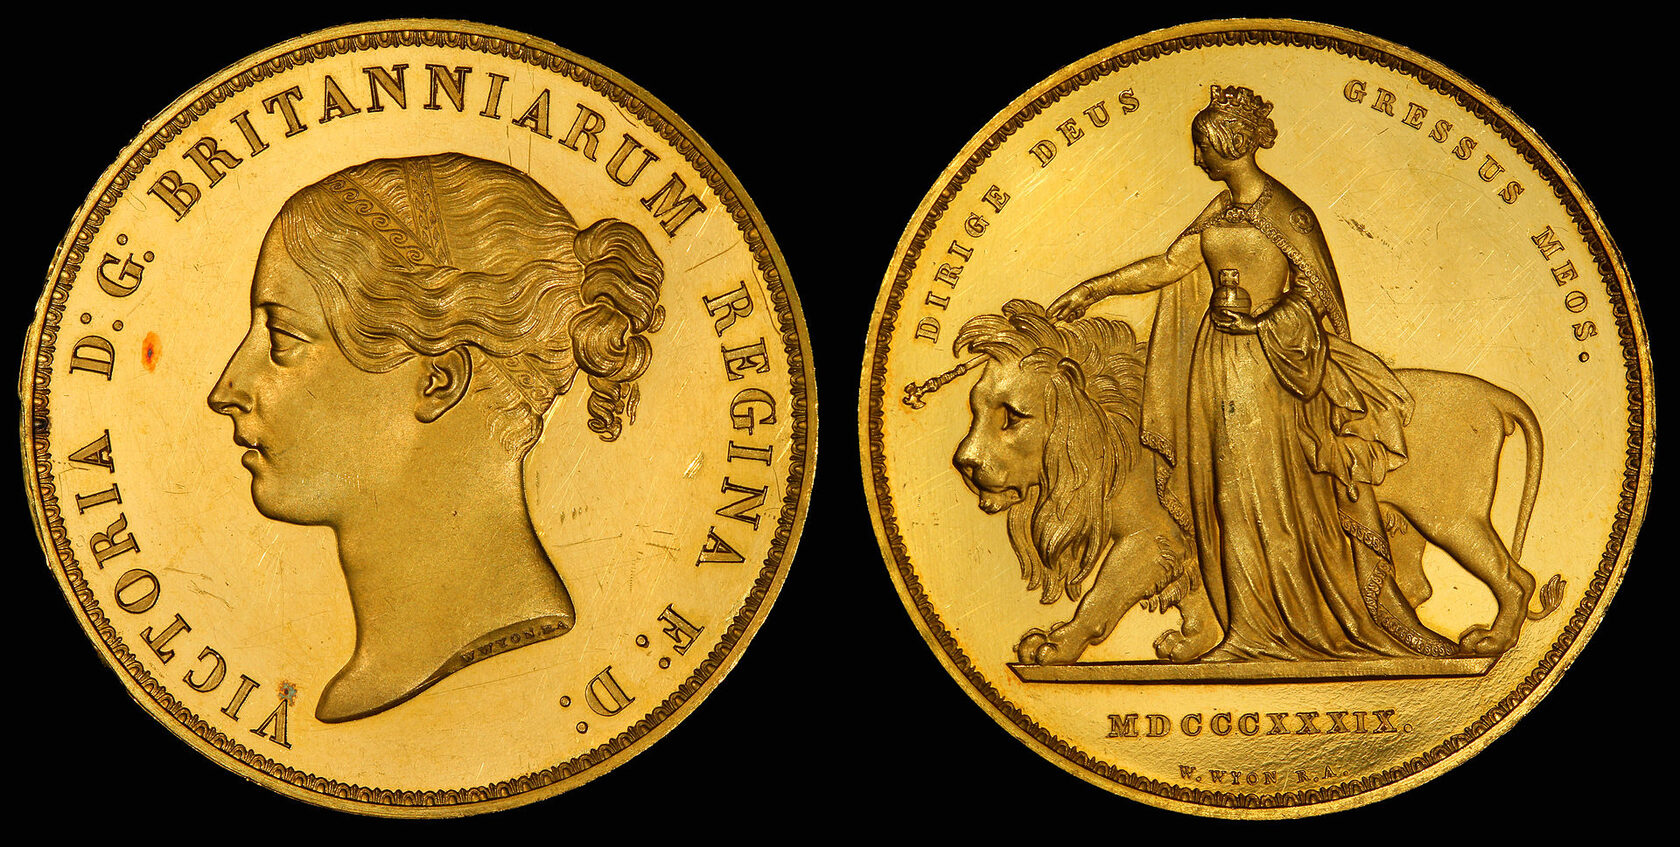 Британская золотая монета в 5 фунтов стерлингов, У.Вайон, 1839 г.